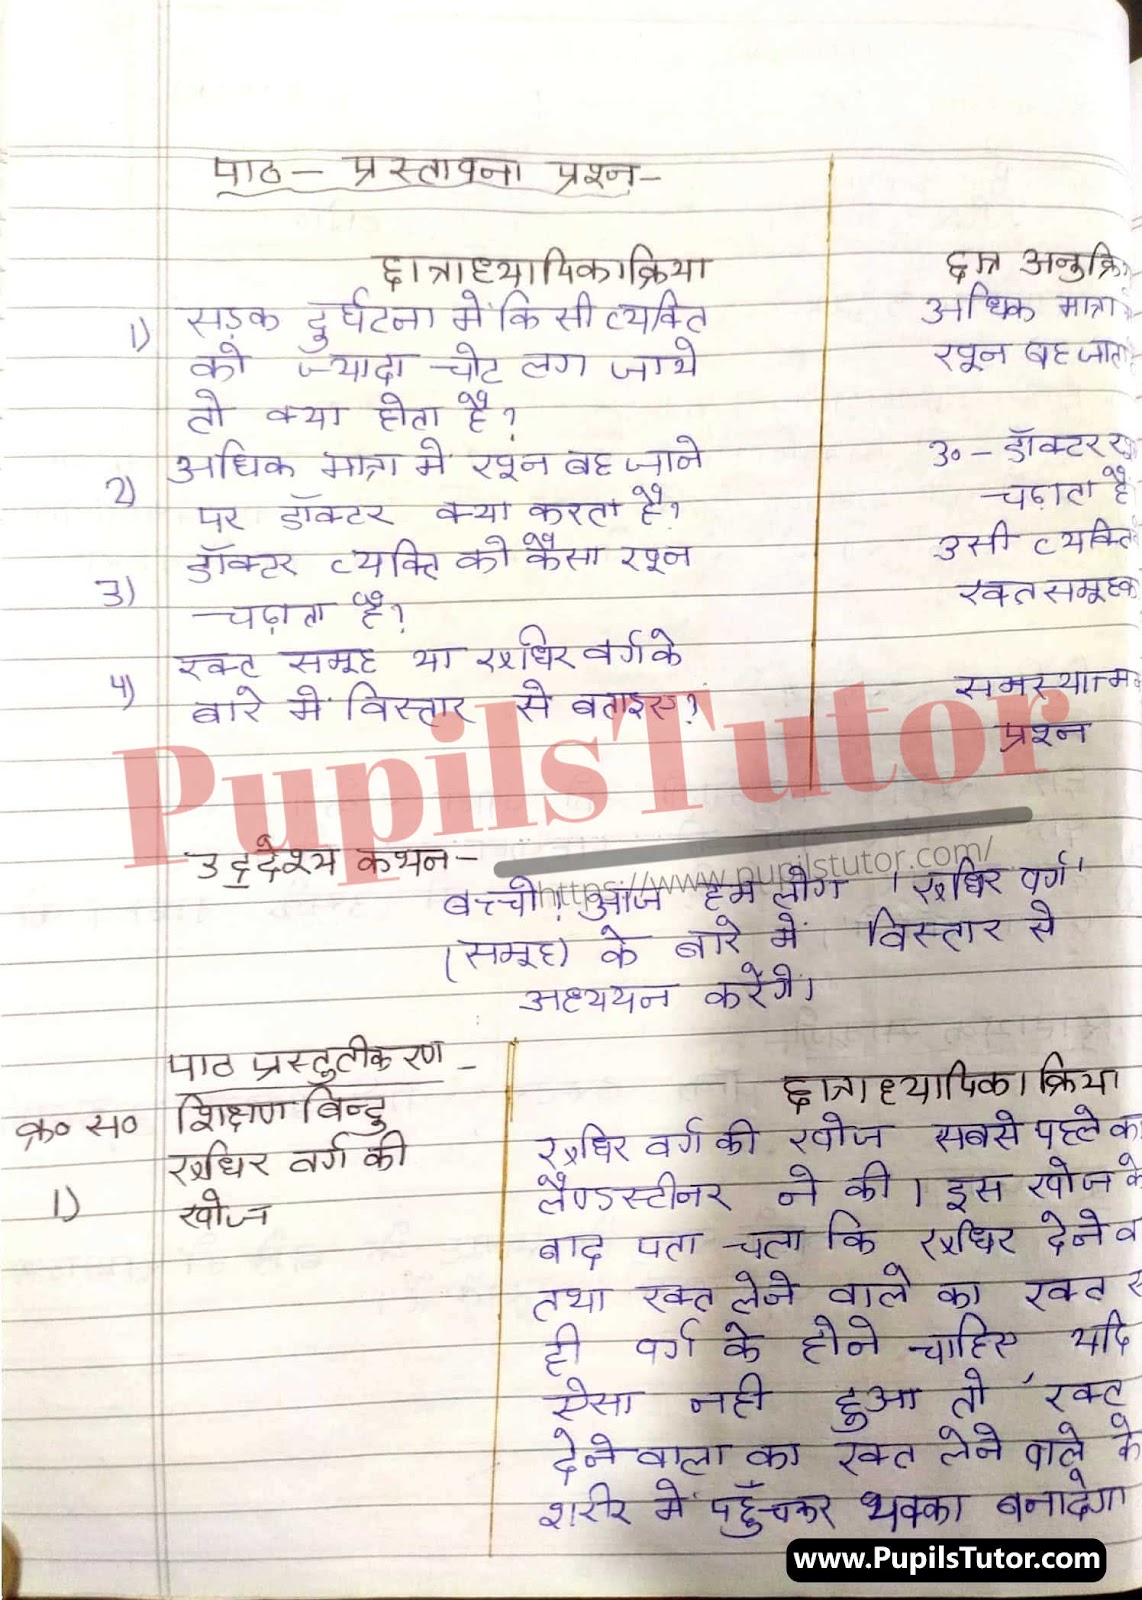 Mega Teaching  Rudhir Varg Lesson Plan For B.Ed And Deled In Hindi Free Download PDF And PPT (Power Point Presentation And Slides) | बीएड और डीएलएड के लिए मेगा  पर रुधिर वर्ग कक्षा 10 से 12 के लेसन प्लान की पीडीऍफ़ और पीपीटी फ्री में डाउनलोड करे| – (Page And PDF Number 2) – pupilstutor